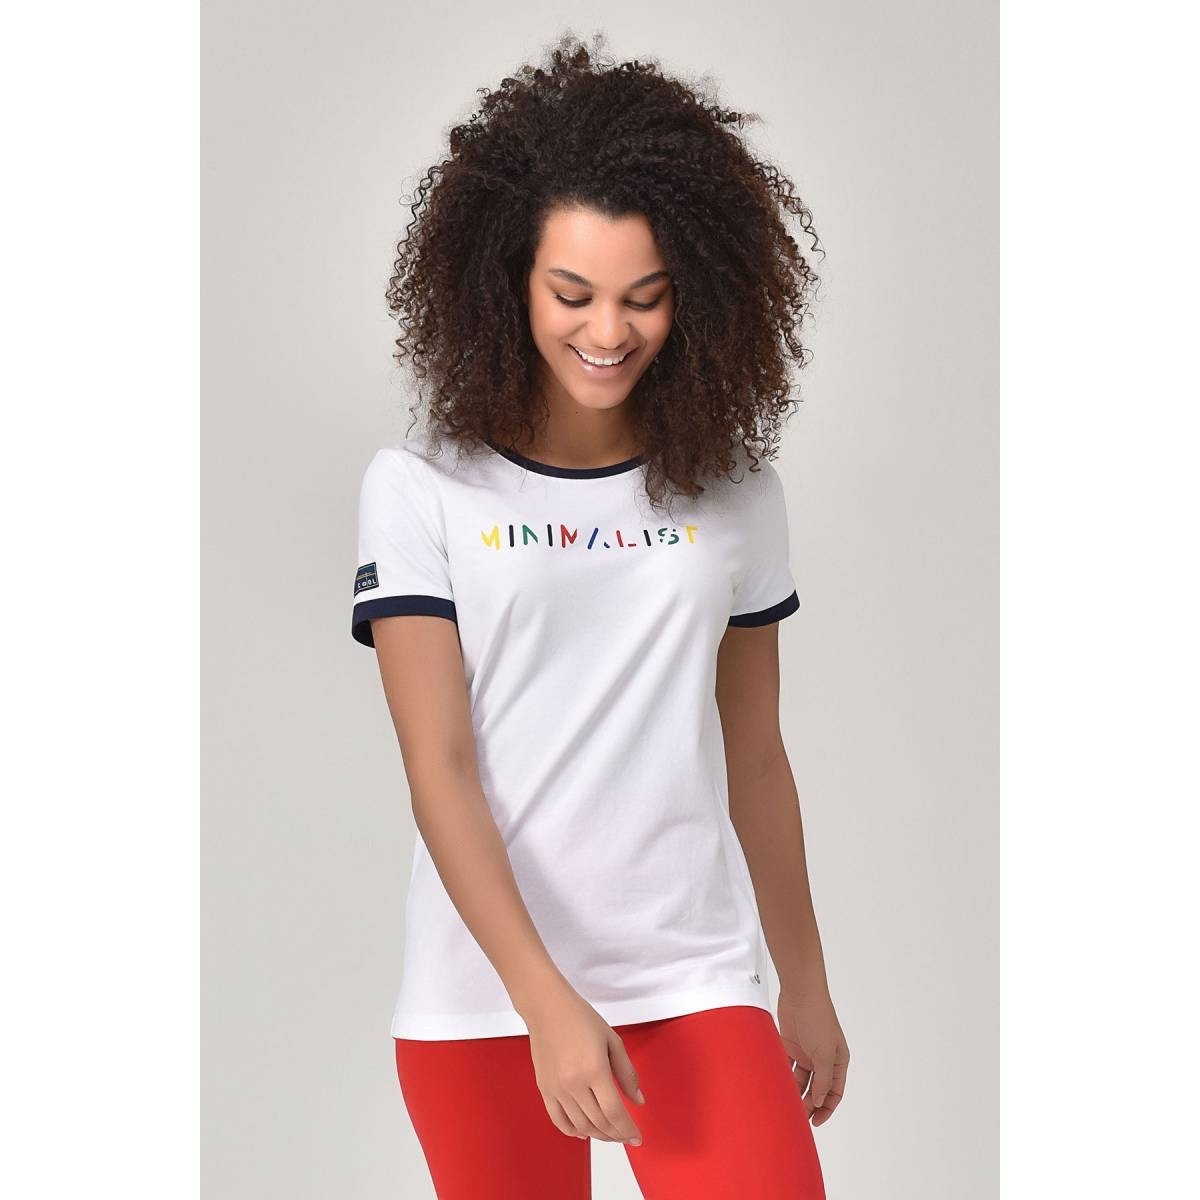 Flo Beyaz Kadın T-shirt  GS-8070. 1